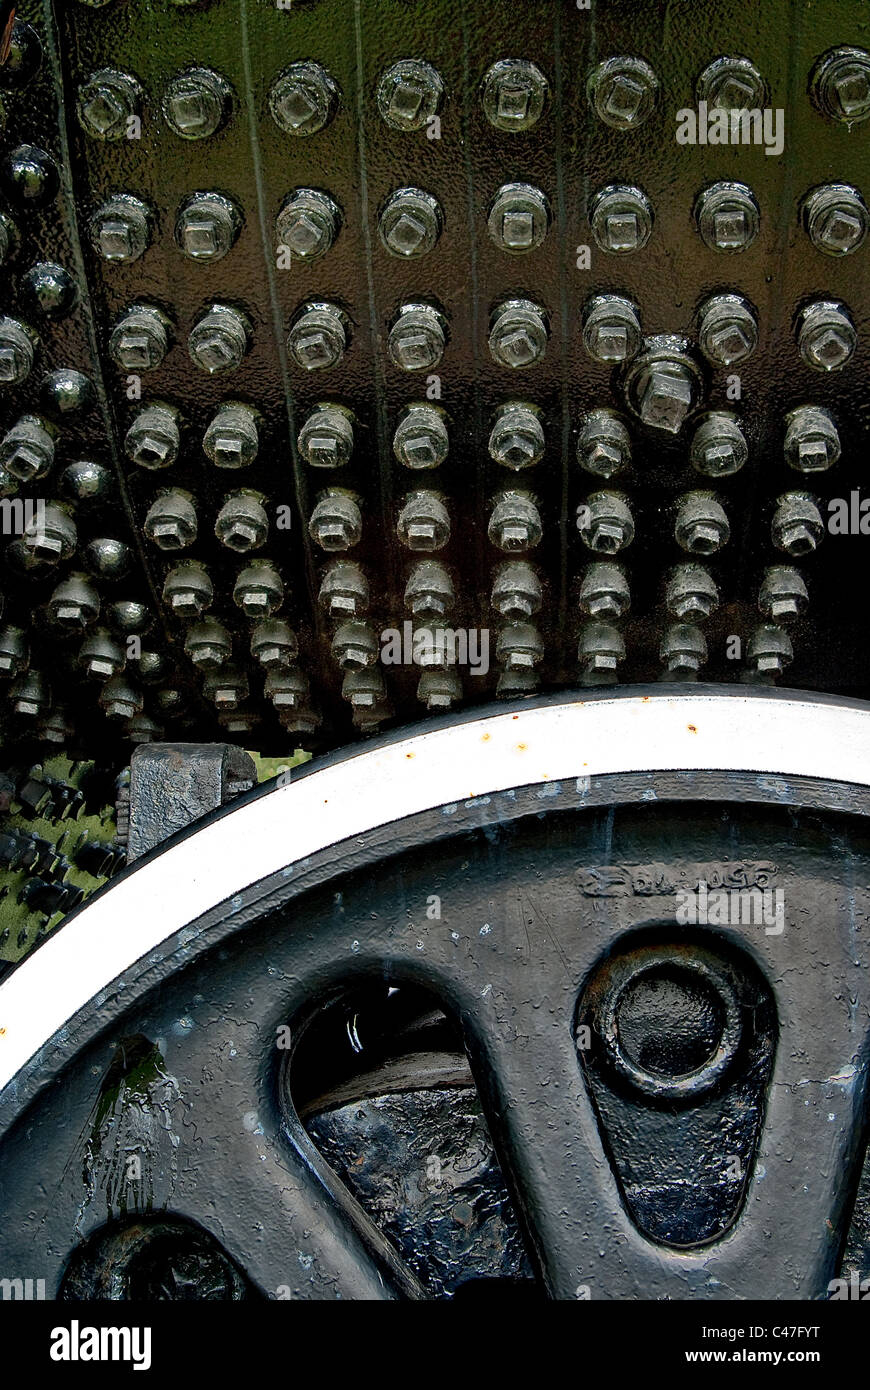 Viele Schrauben auf einer Fläche von schwarzem Eisen mit Eisenrad im Vordergrund. Stockfoto